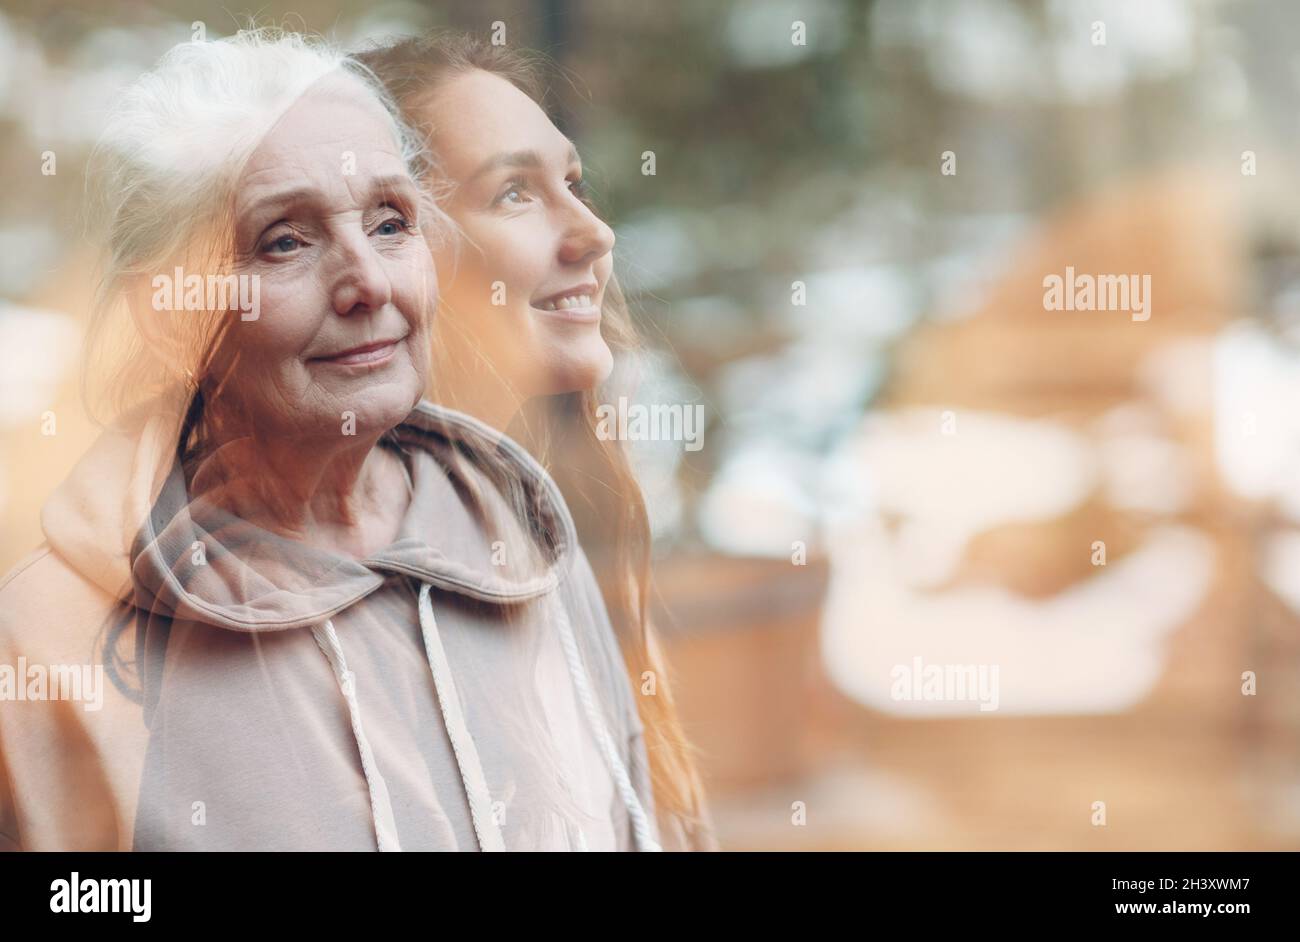 Image de la grand-mère et de la petite-fille en double exposition.Portrait de femme jeune et âgée.Amour, rêves et plaisir familial Banque D'Images